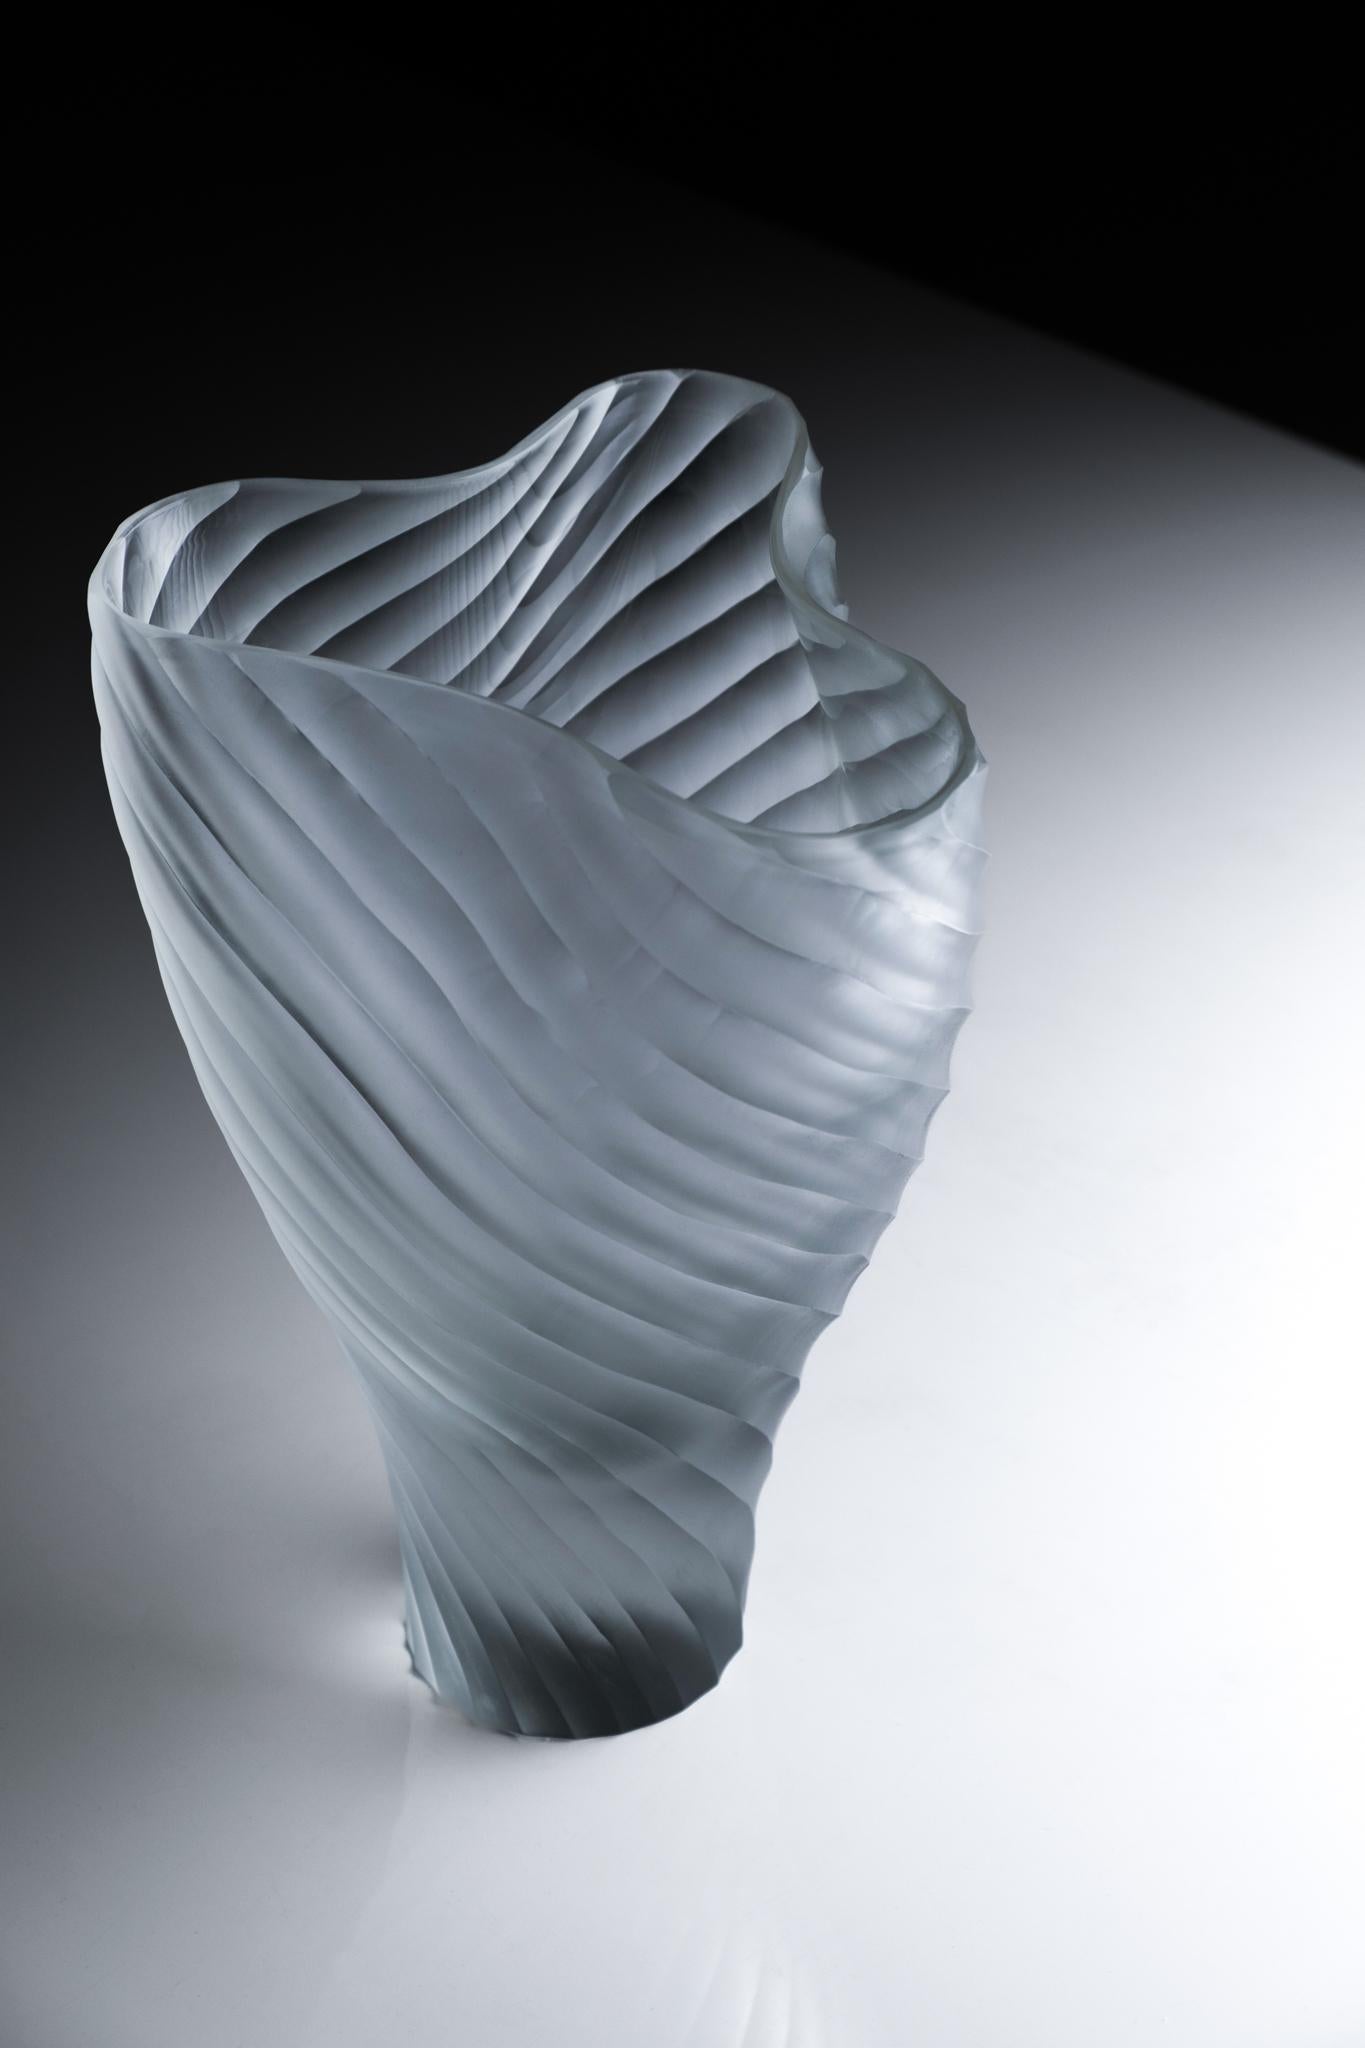 Vase Mascareta de Purho
Dimensions : D18 x H28 cm
MATERIAL : Verre de Murano
Disponible dans d'autres couleurs.

Mascareta est un vase de la Collection Laguna conçue par Ludovica+Roberto Palomba pour Purho au printemps 2022.
Caractérisé par des